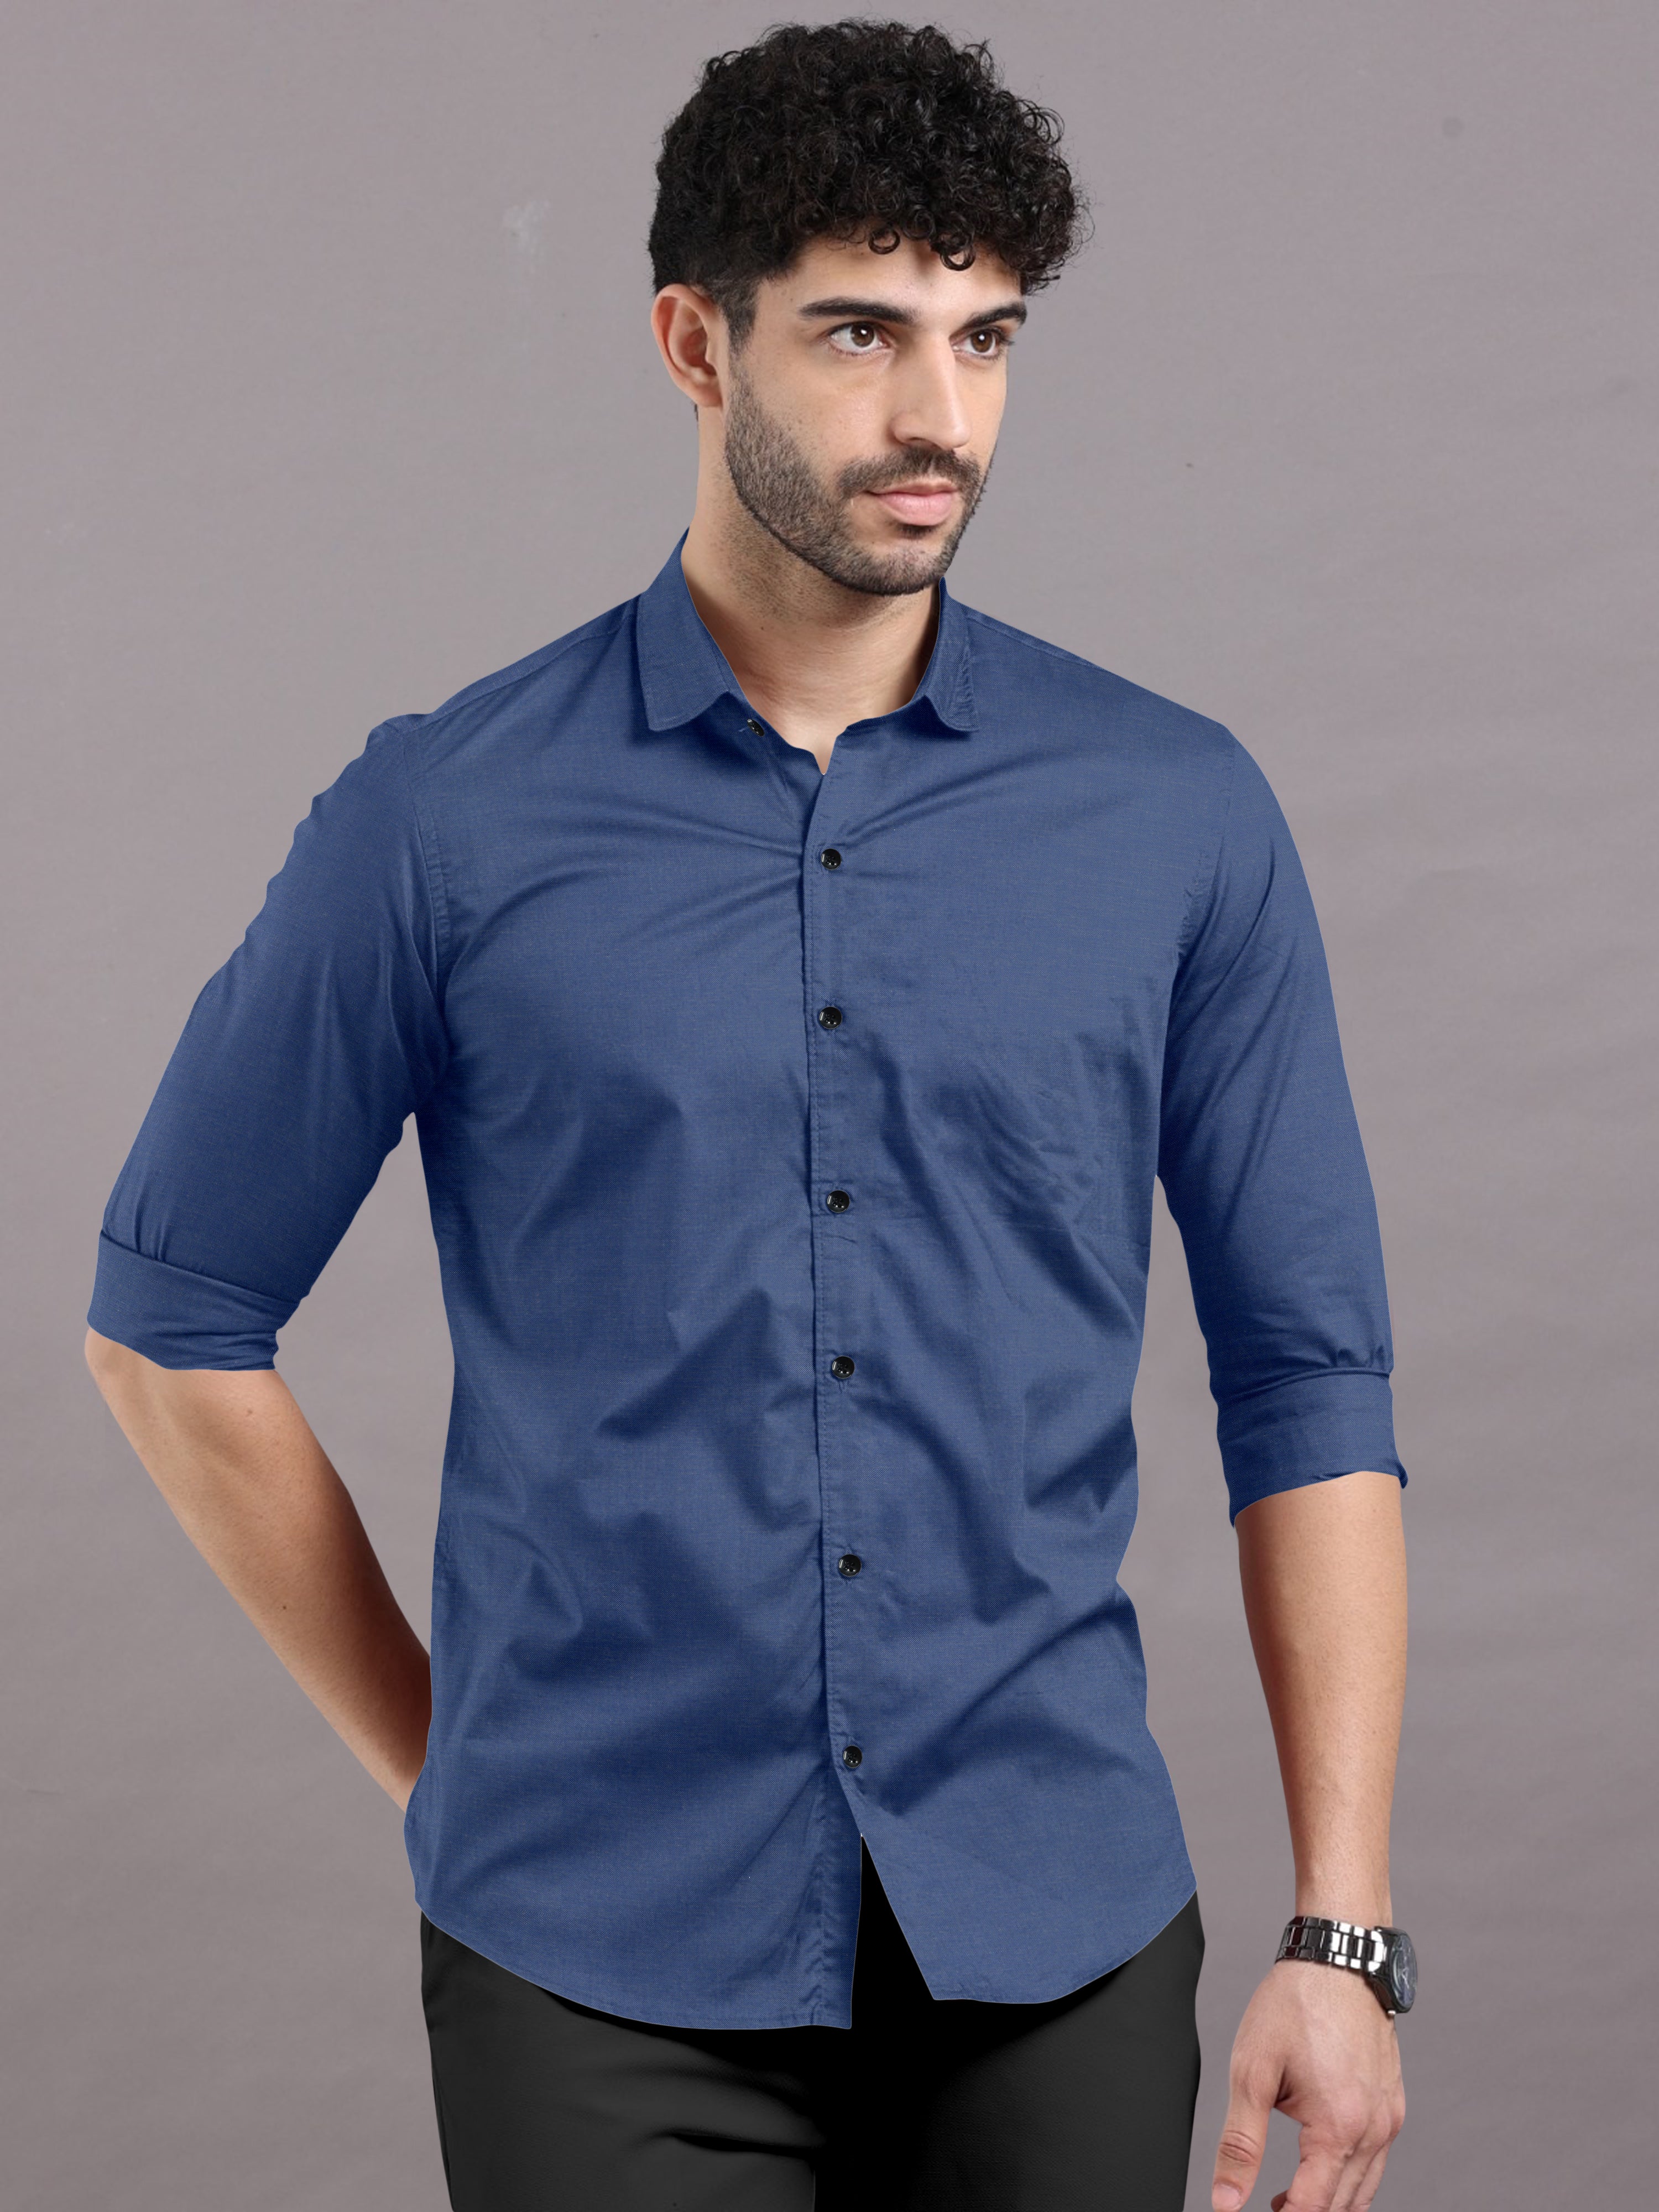 Royal blue Plain Shirt With Spread Collar